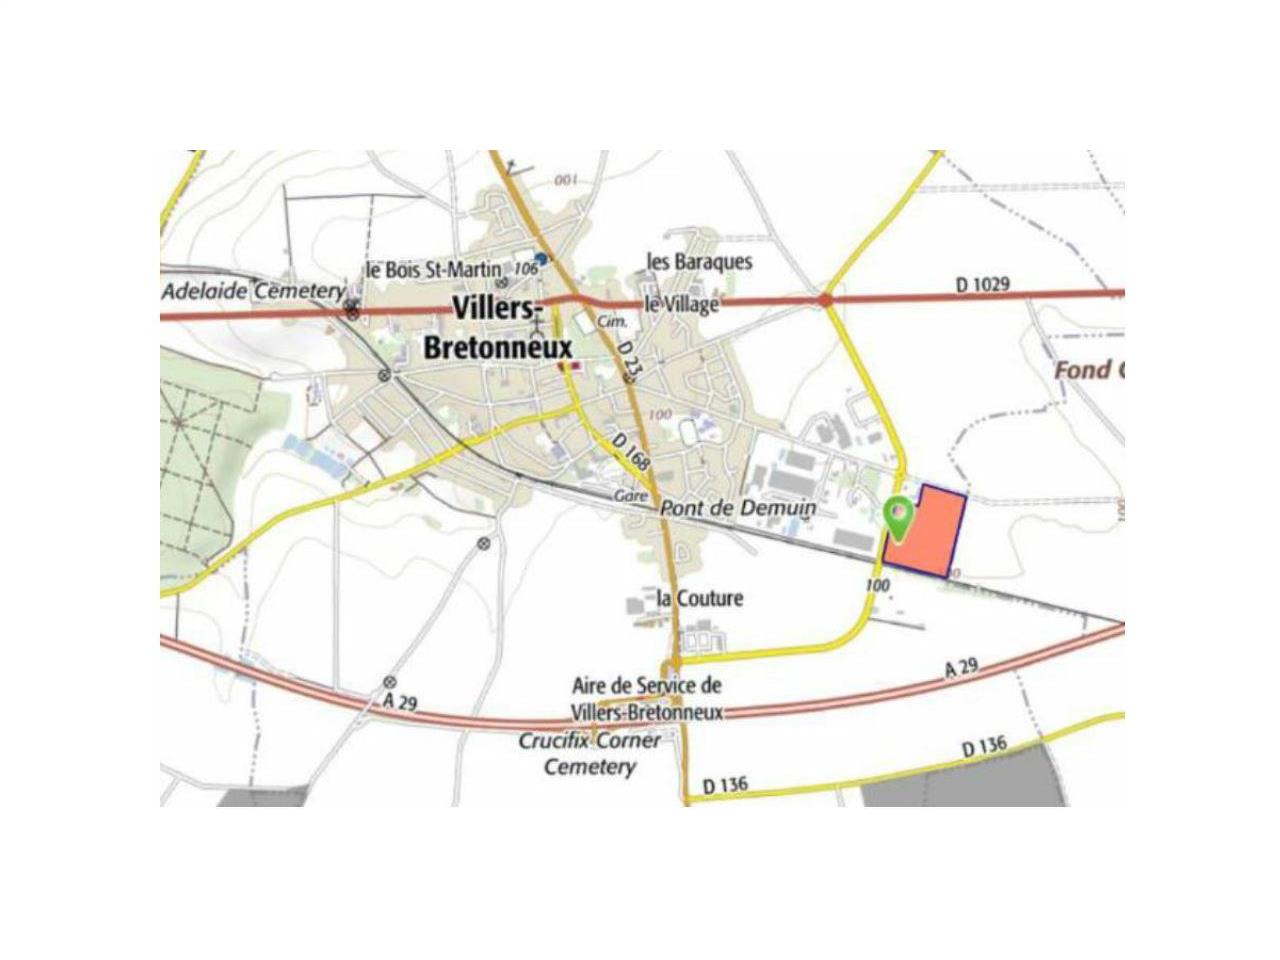 Location entrepôt classe a 37750m² Villers-Bretonneux